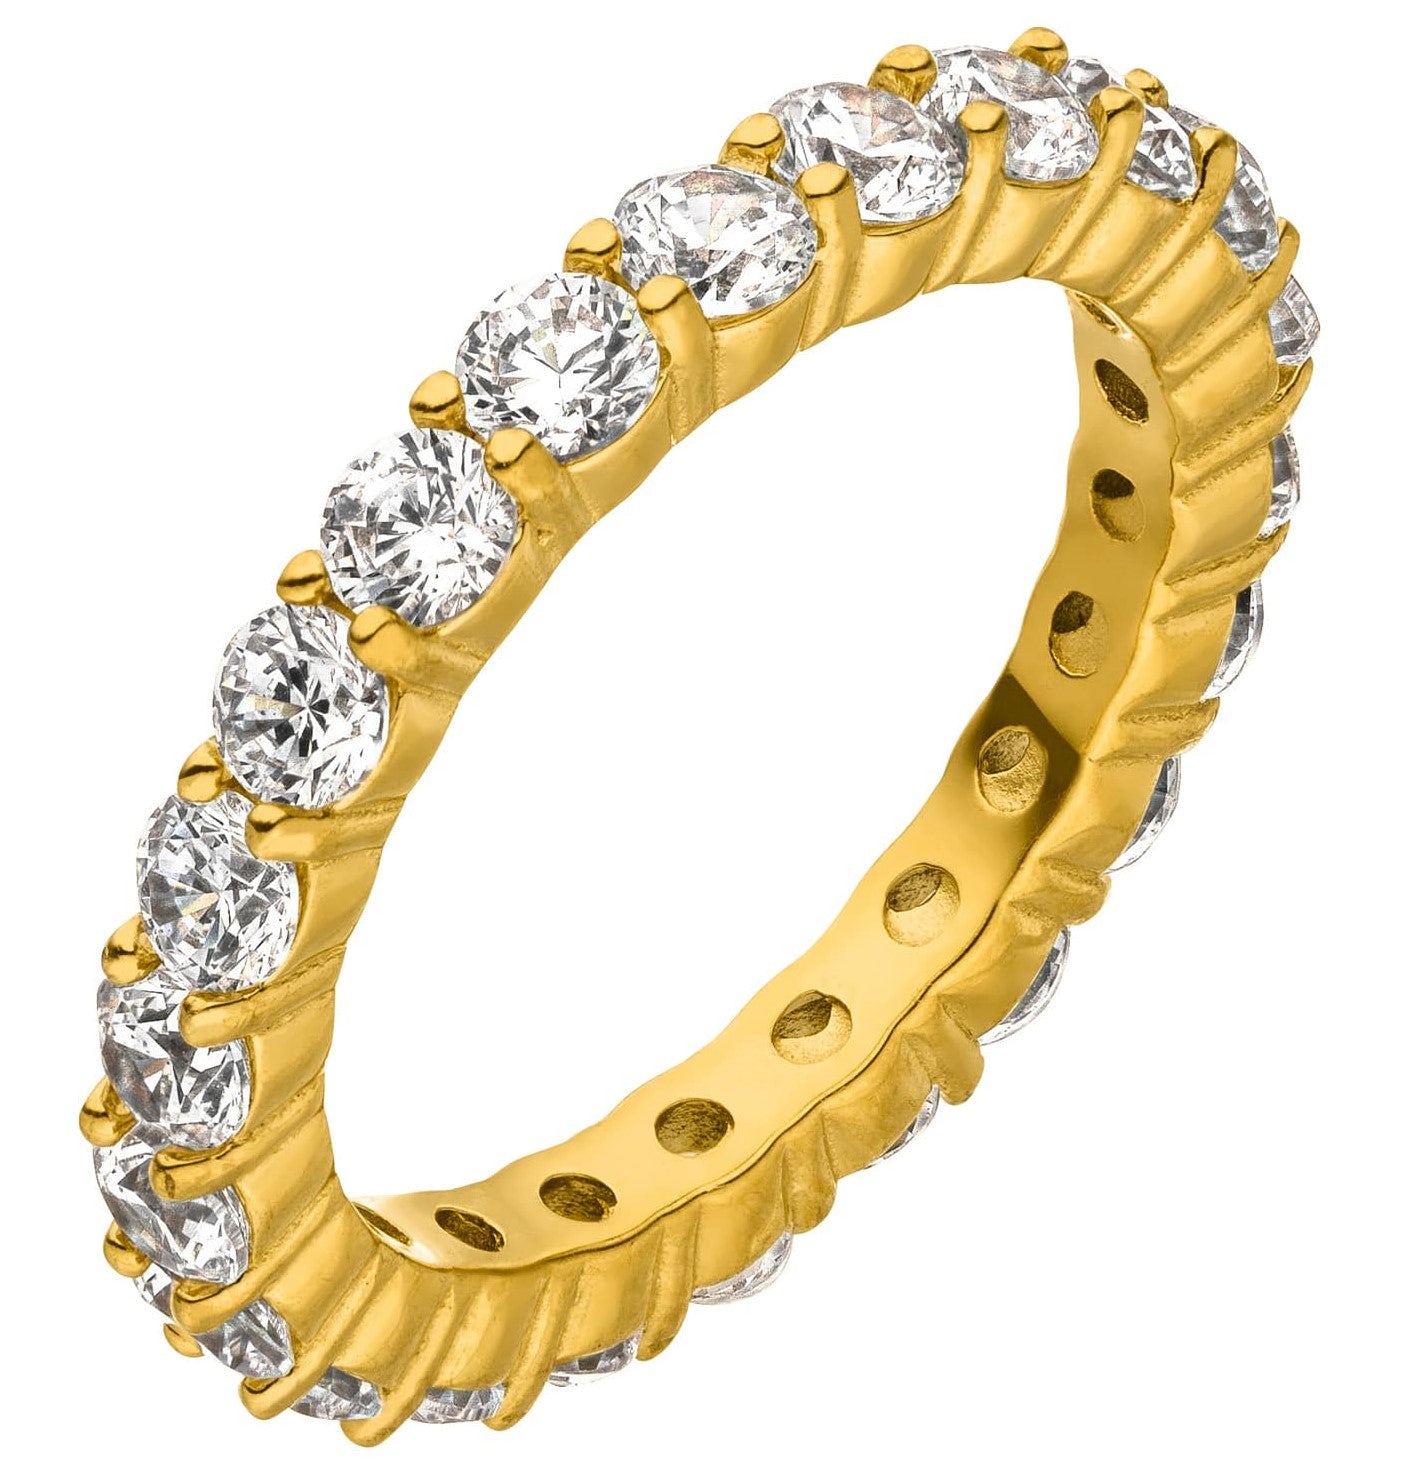 Ringgröße messen leicht gemacht: Inkl. Tipps vom Profi ✓ – DIAMOND MODE